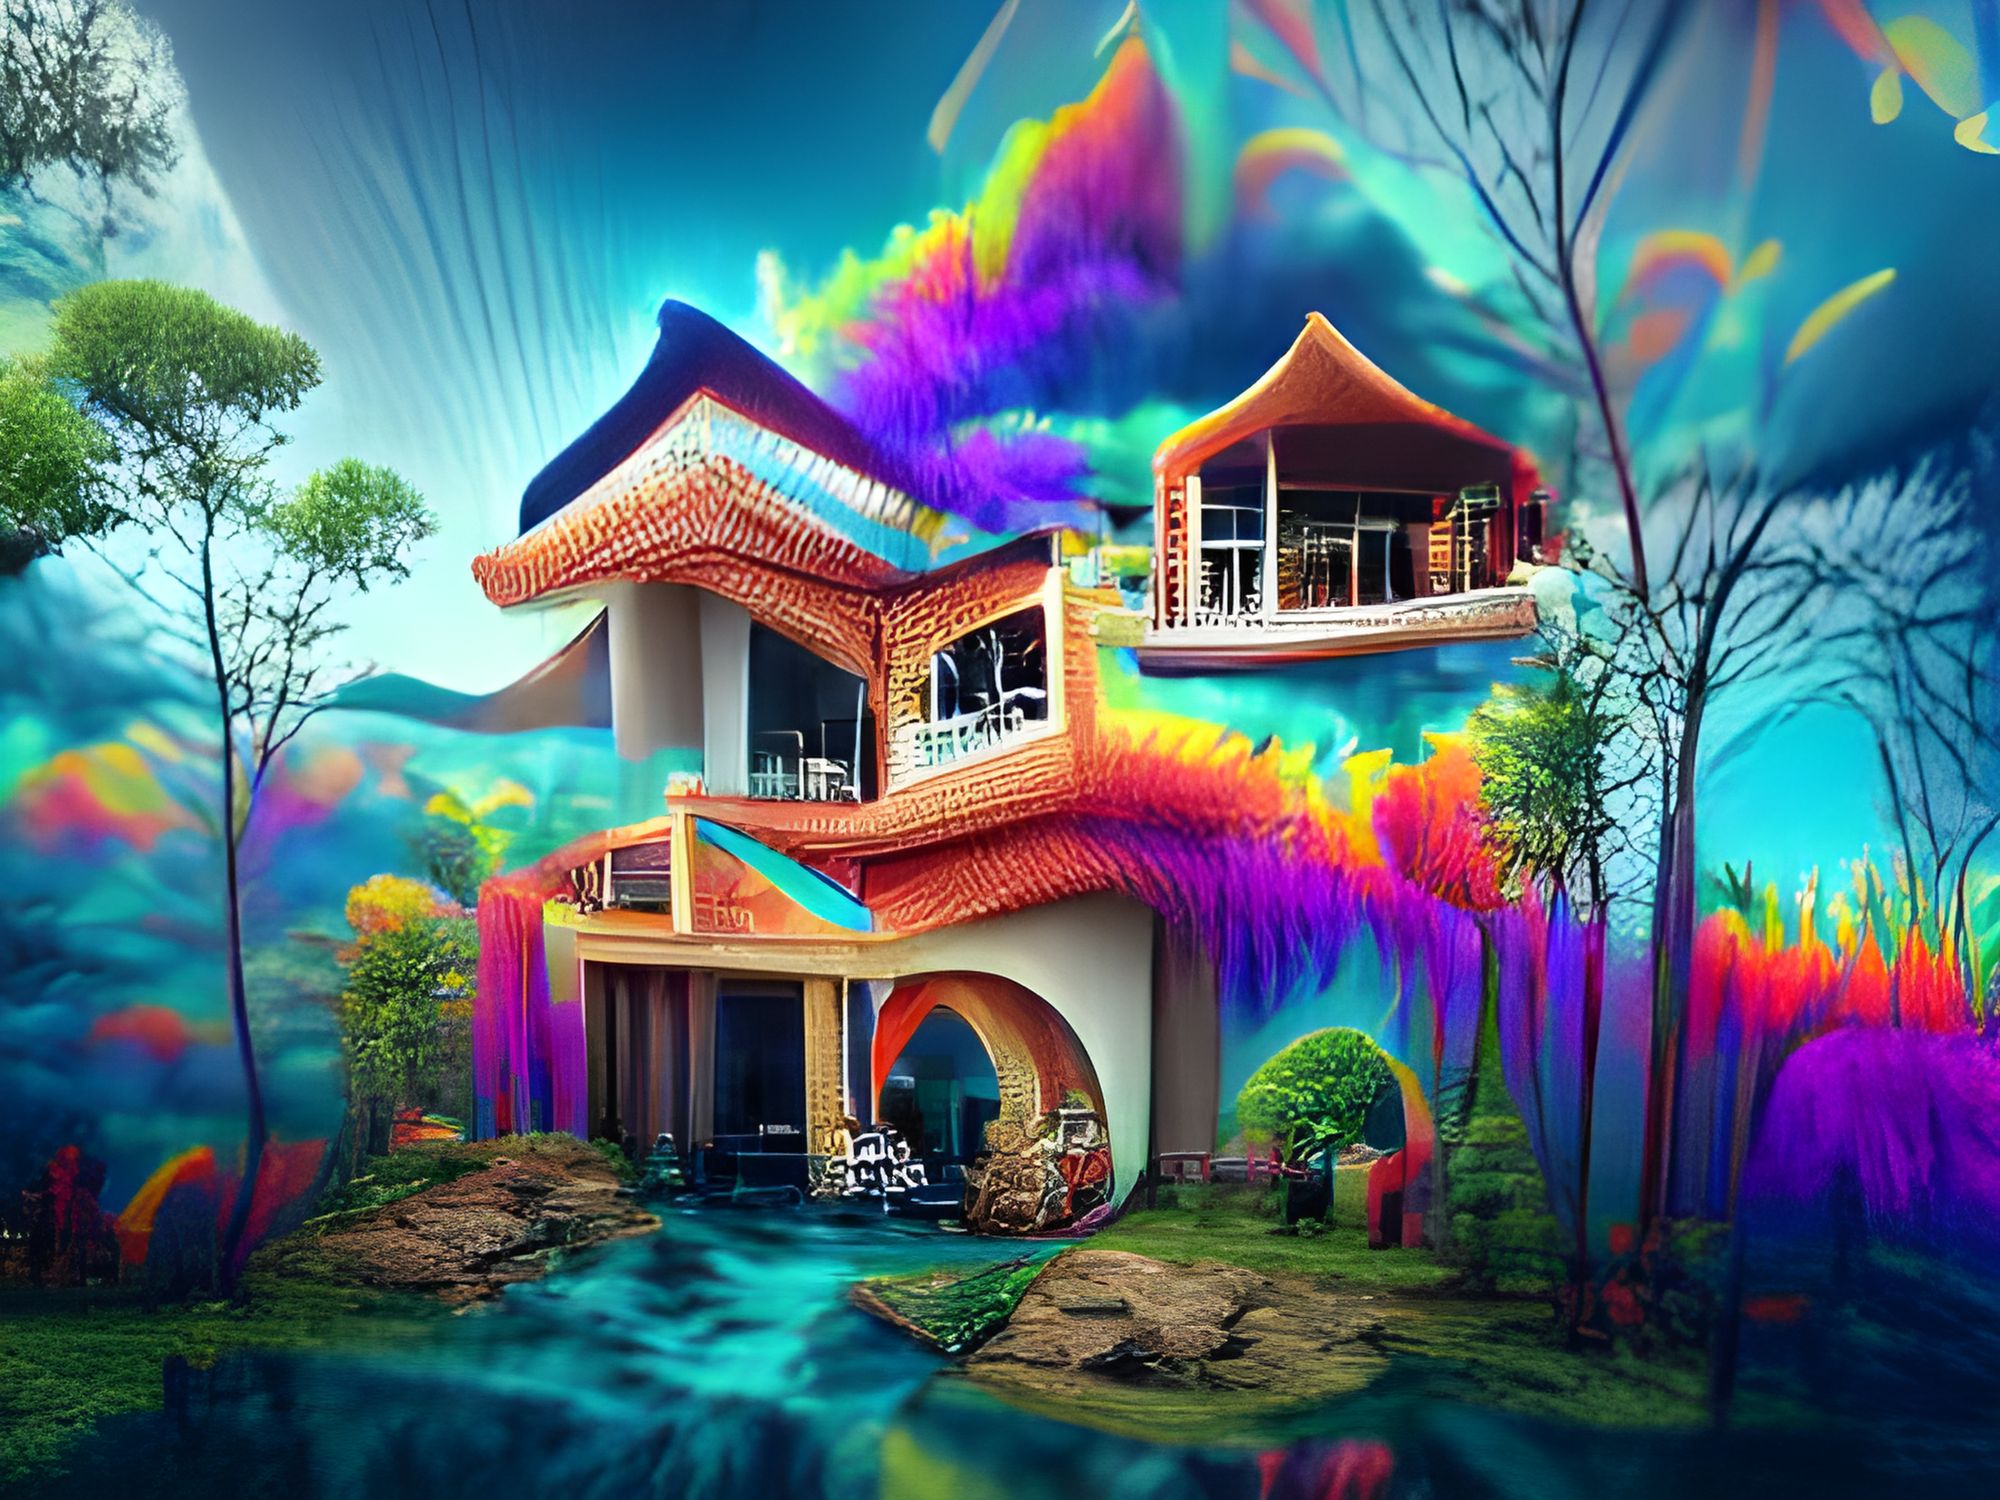 Dream House Wallpaper Hd wallpaper | nature and landscape | Wallpaper Better